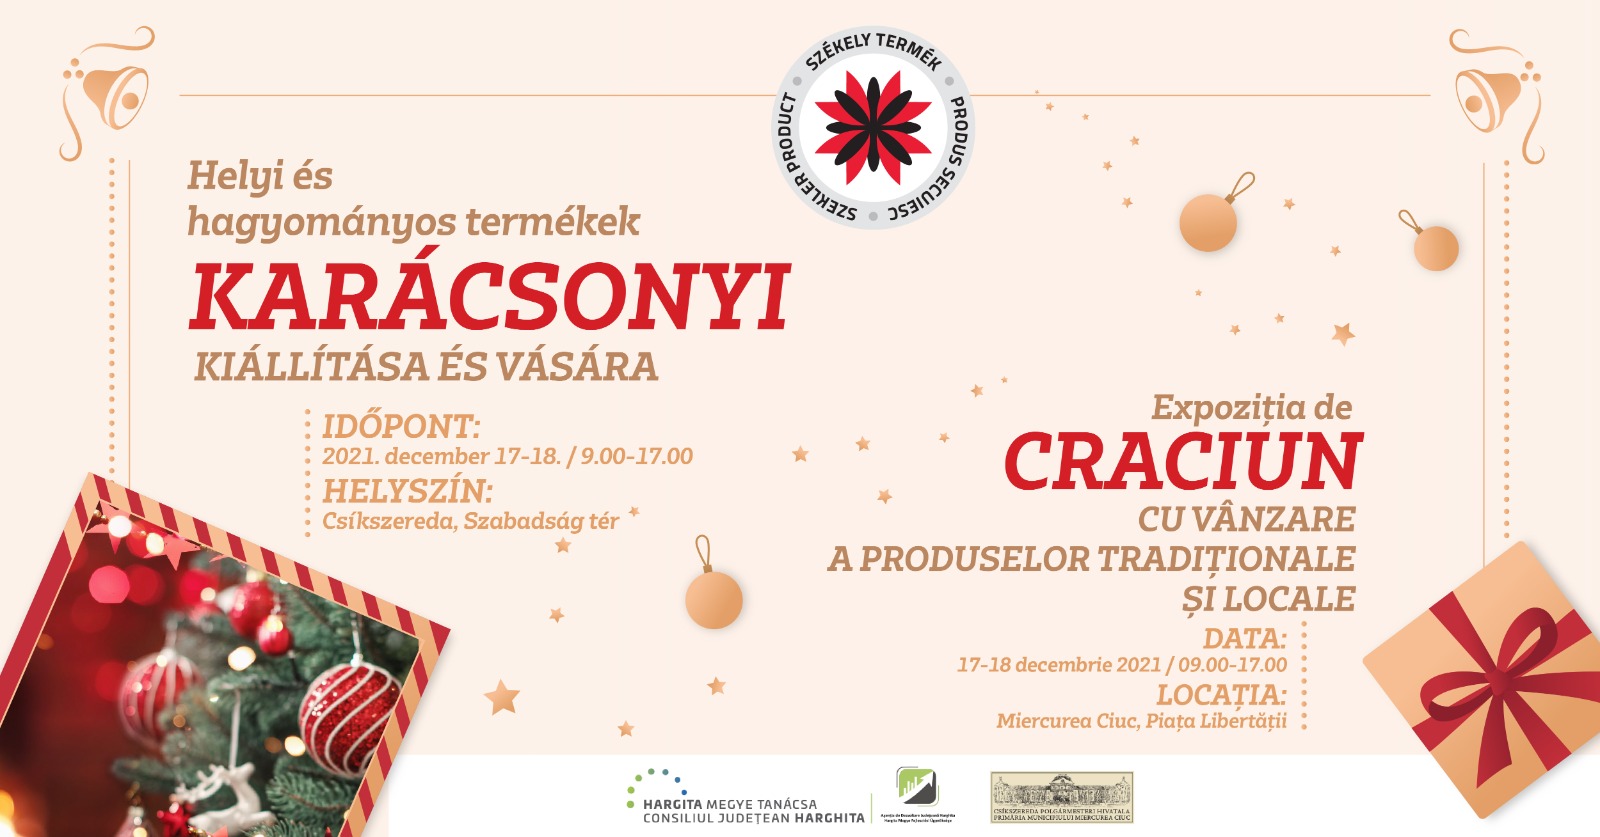 Expoziția de Crăciun cu vânzare a produselor tradiționale și locale (Miercurea-Ciuc)